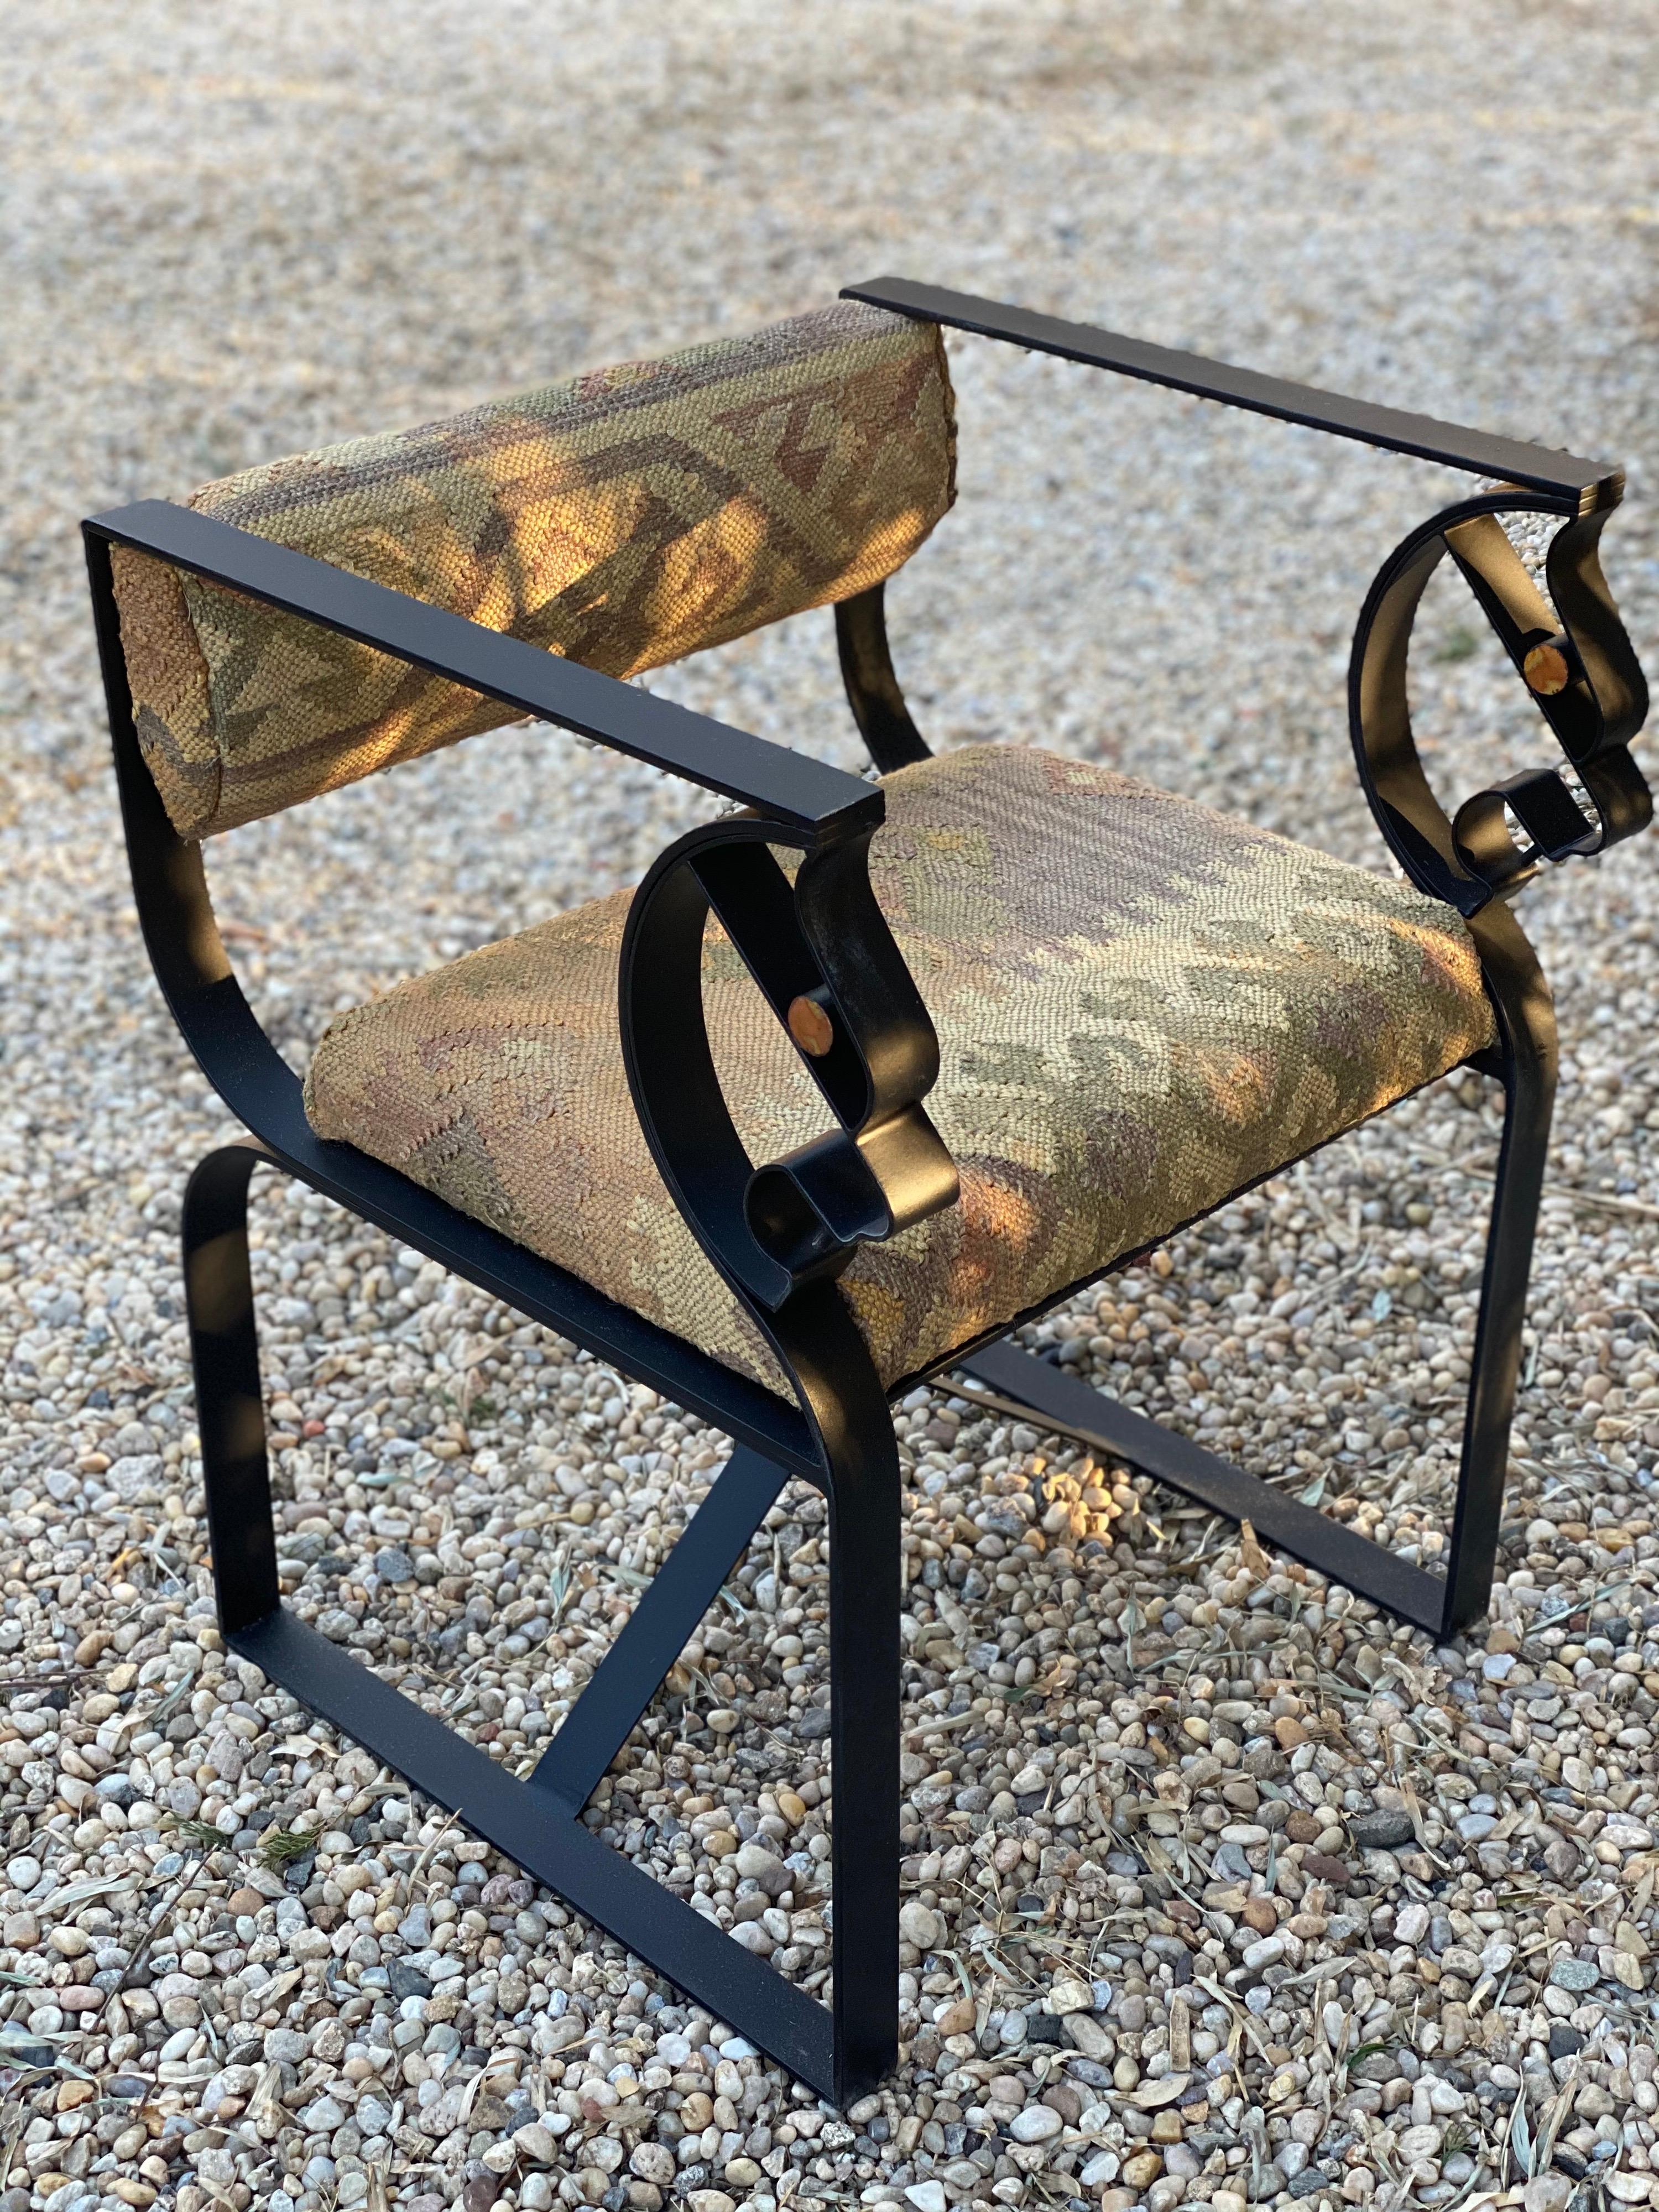 Sessel aus schwarzem Metall mit Kilim-Polsterung.
Vintage-Kilim-Teppich neu gepolstert auf Sitz und Rücken. Lackiert in schwarzer Ausführung.
Maße: 20.75